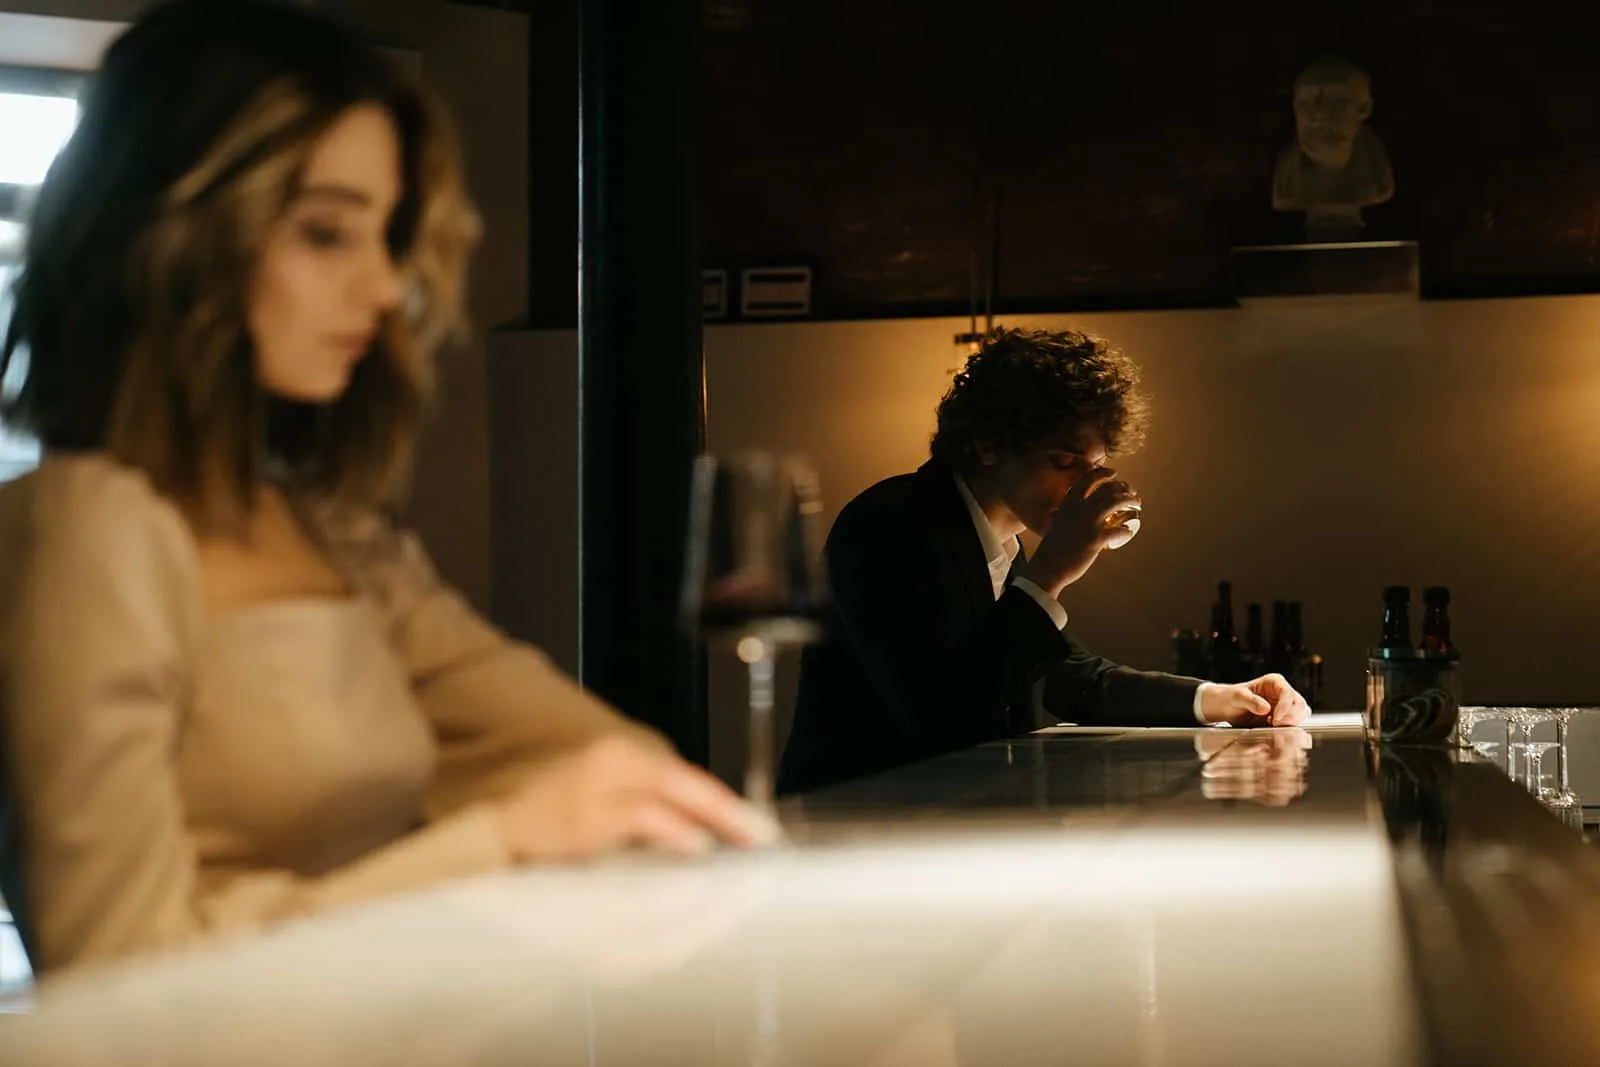 Ein Mann sitzt alleine an der Theke und trinkt aus dem Glas in der Nähe einer Frau